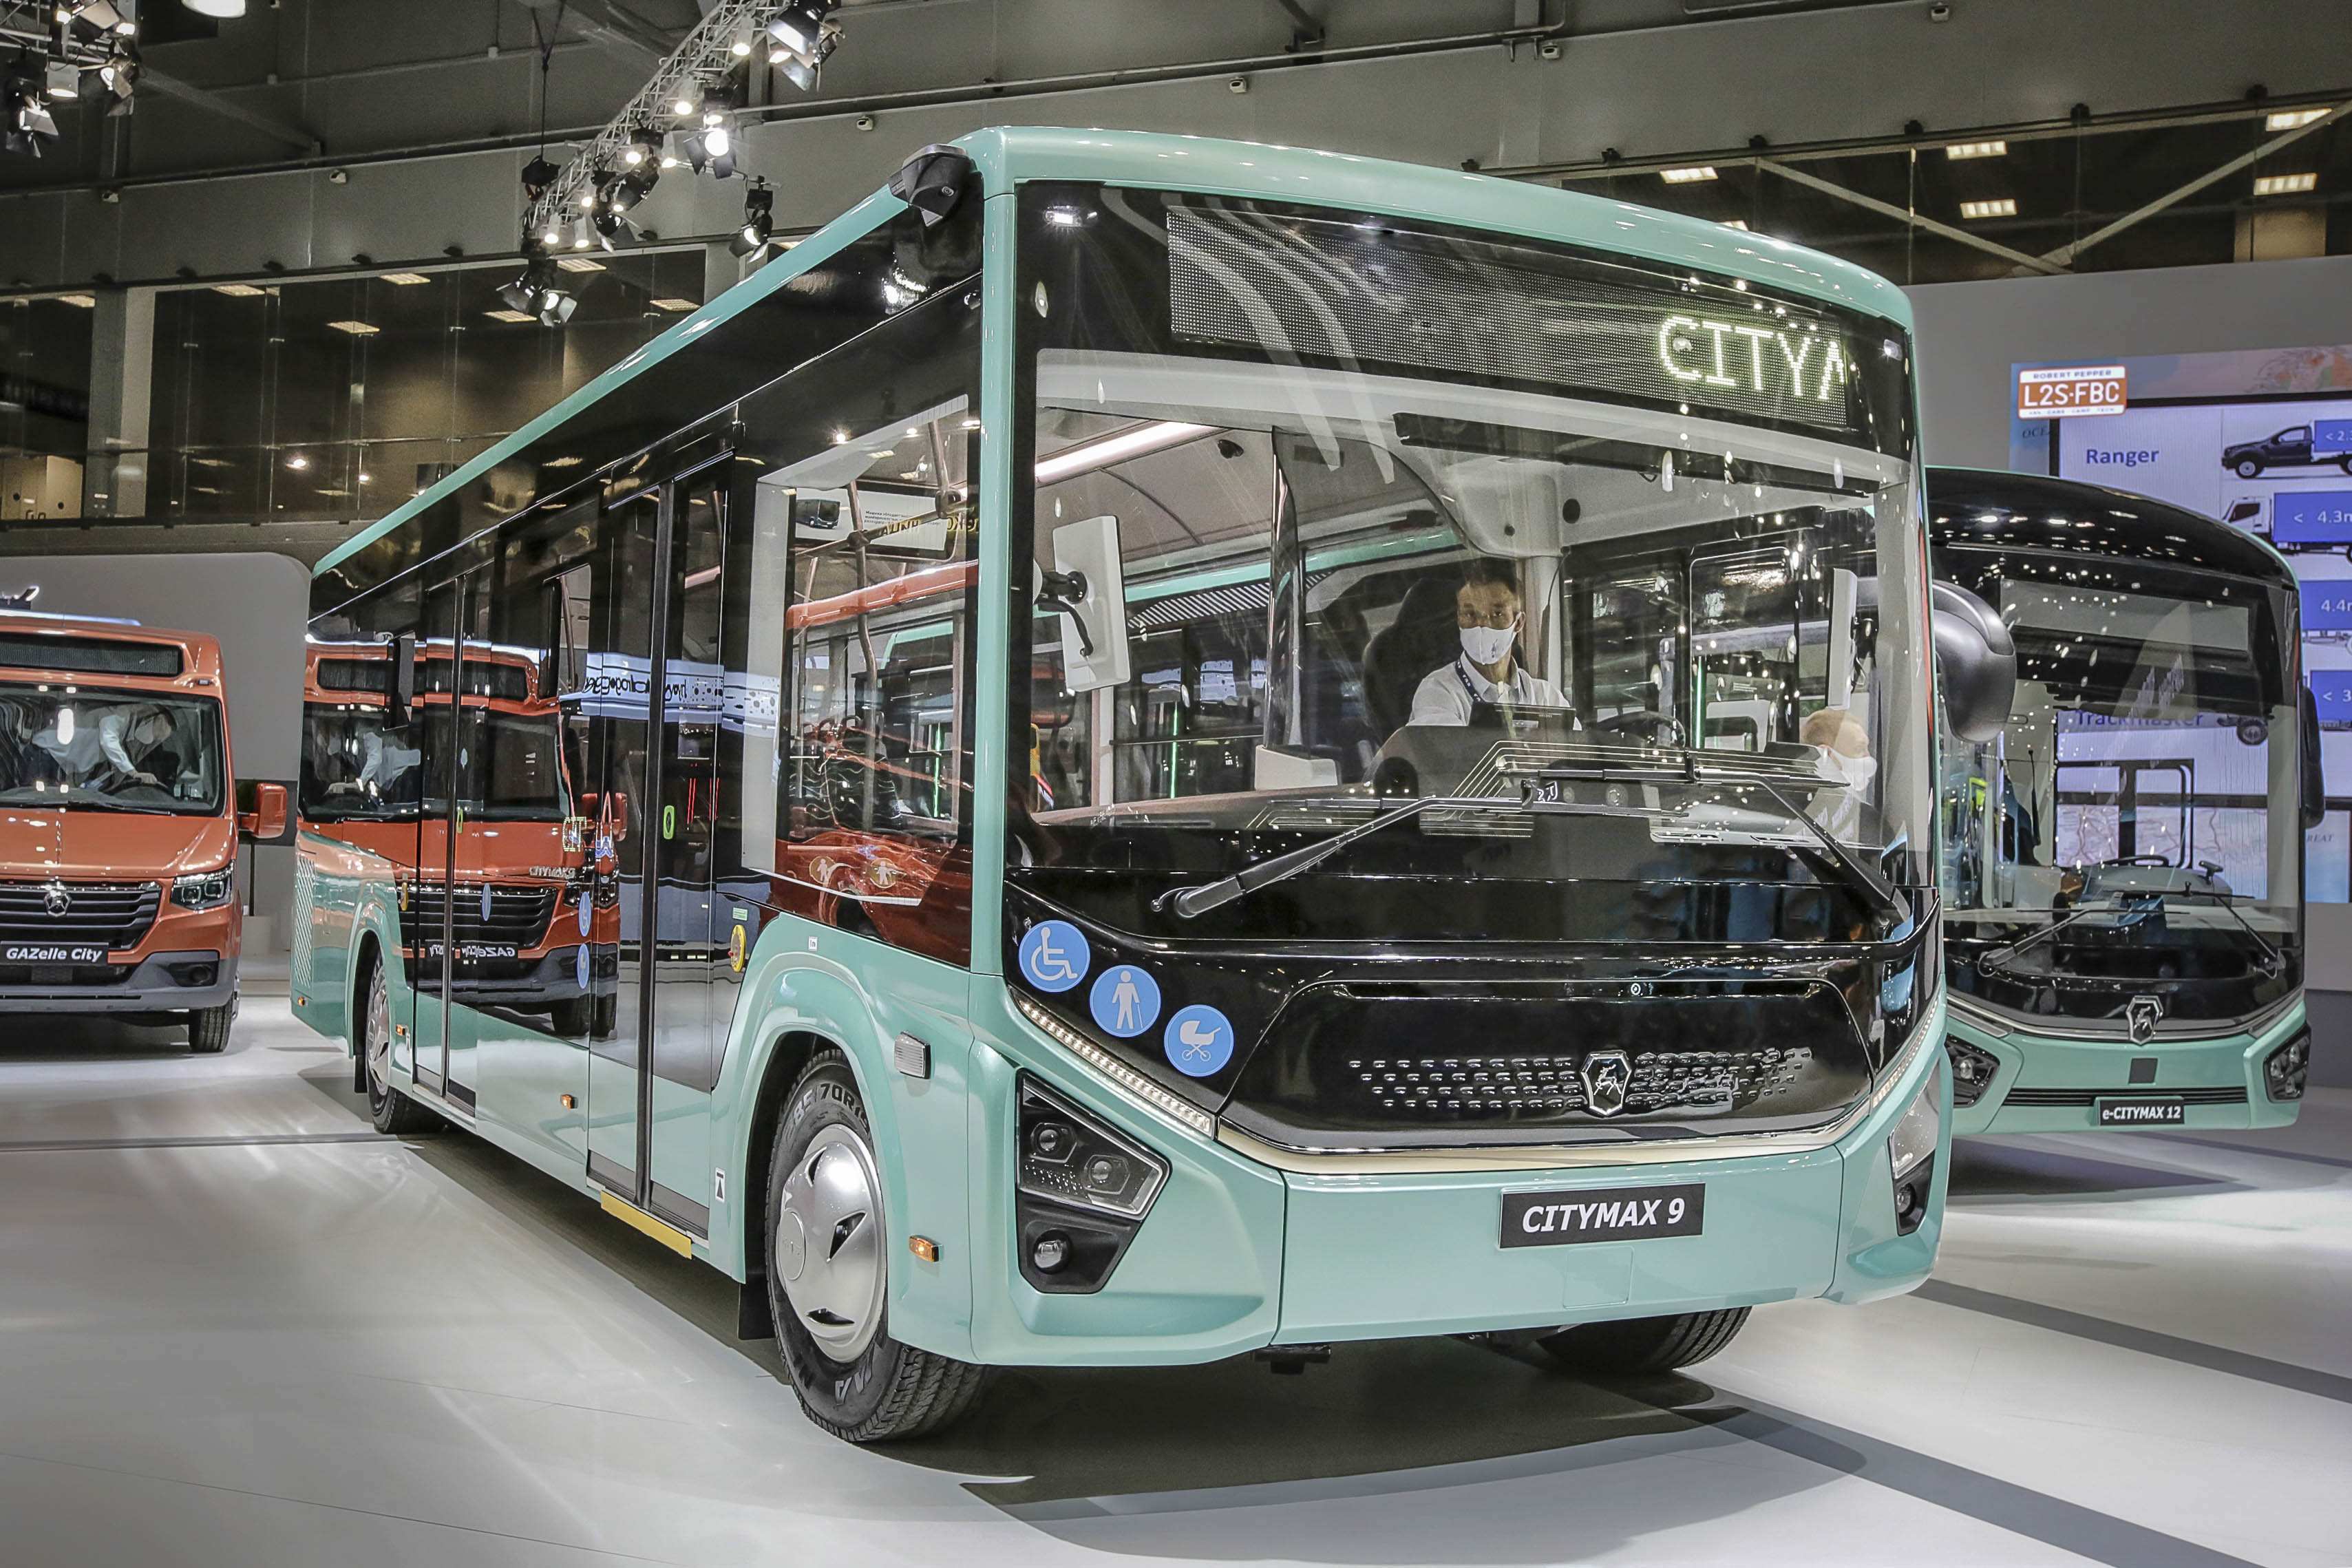 Нижегородский перевозчик закупил 30 новых автобусов Citymax-9 - фото 1